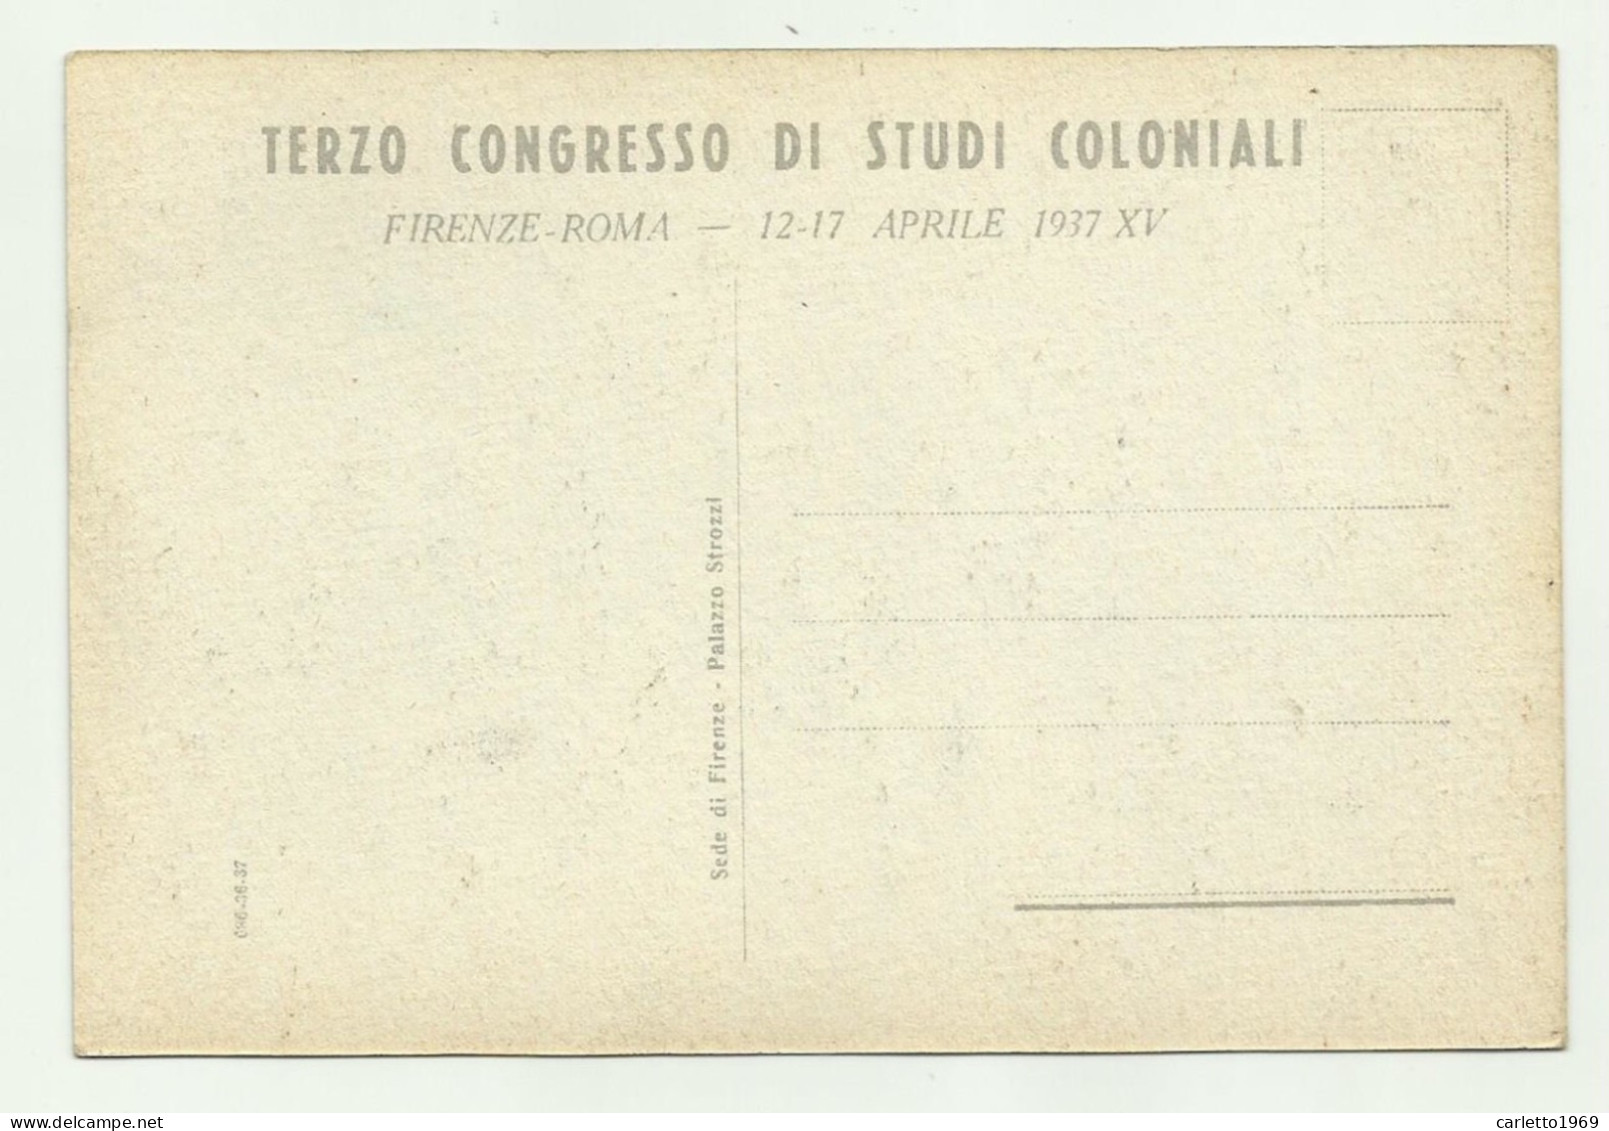 3 CONGRESSO NAZ. STUDI COLONIALI - FIRENZE - ROMA 12-17 APRILE 1937 - NV  FG - Equipment